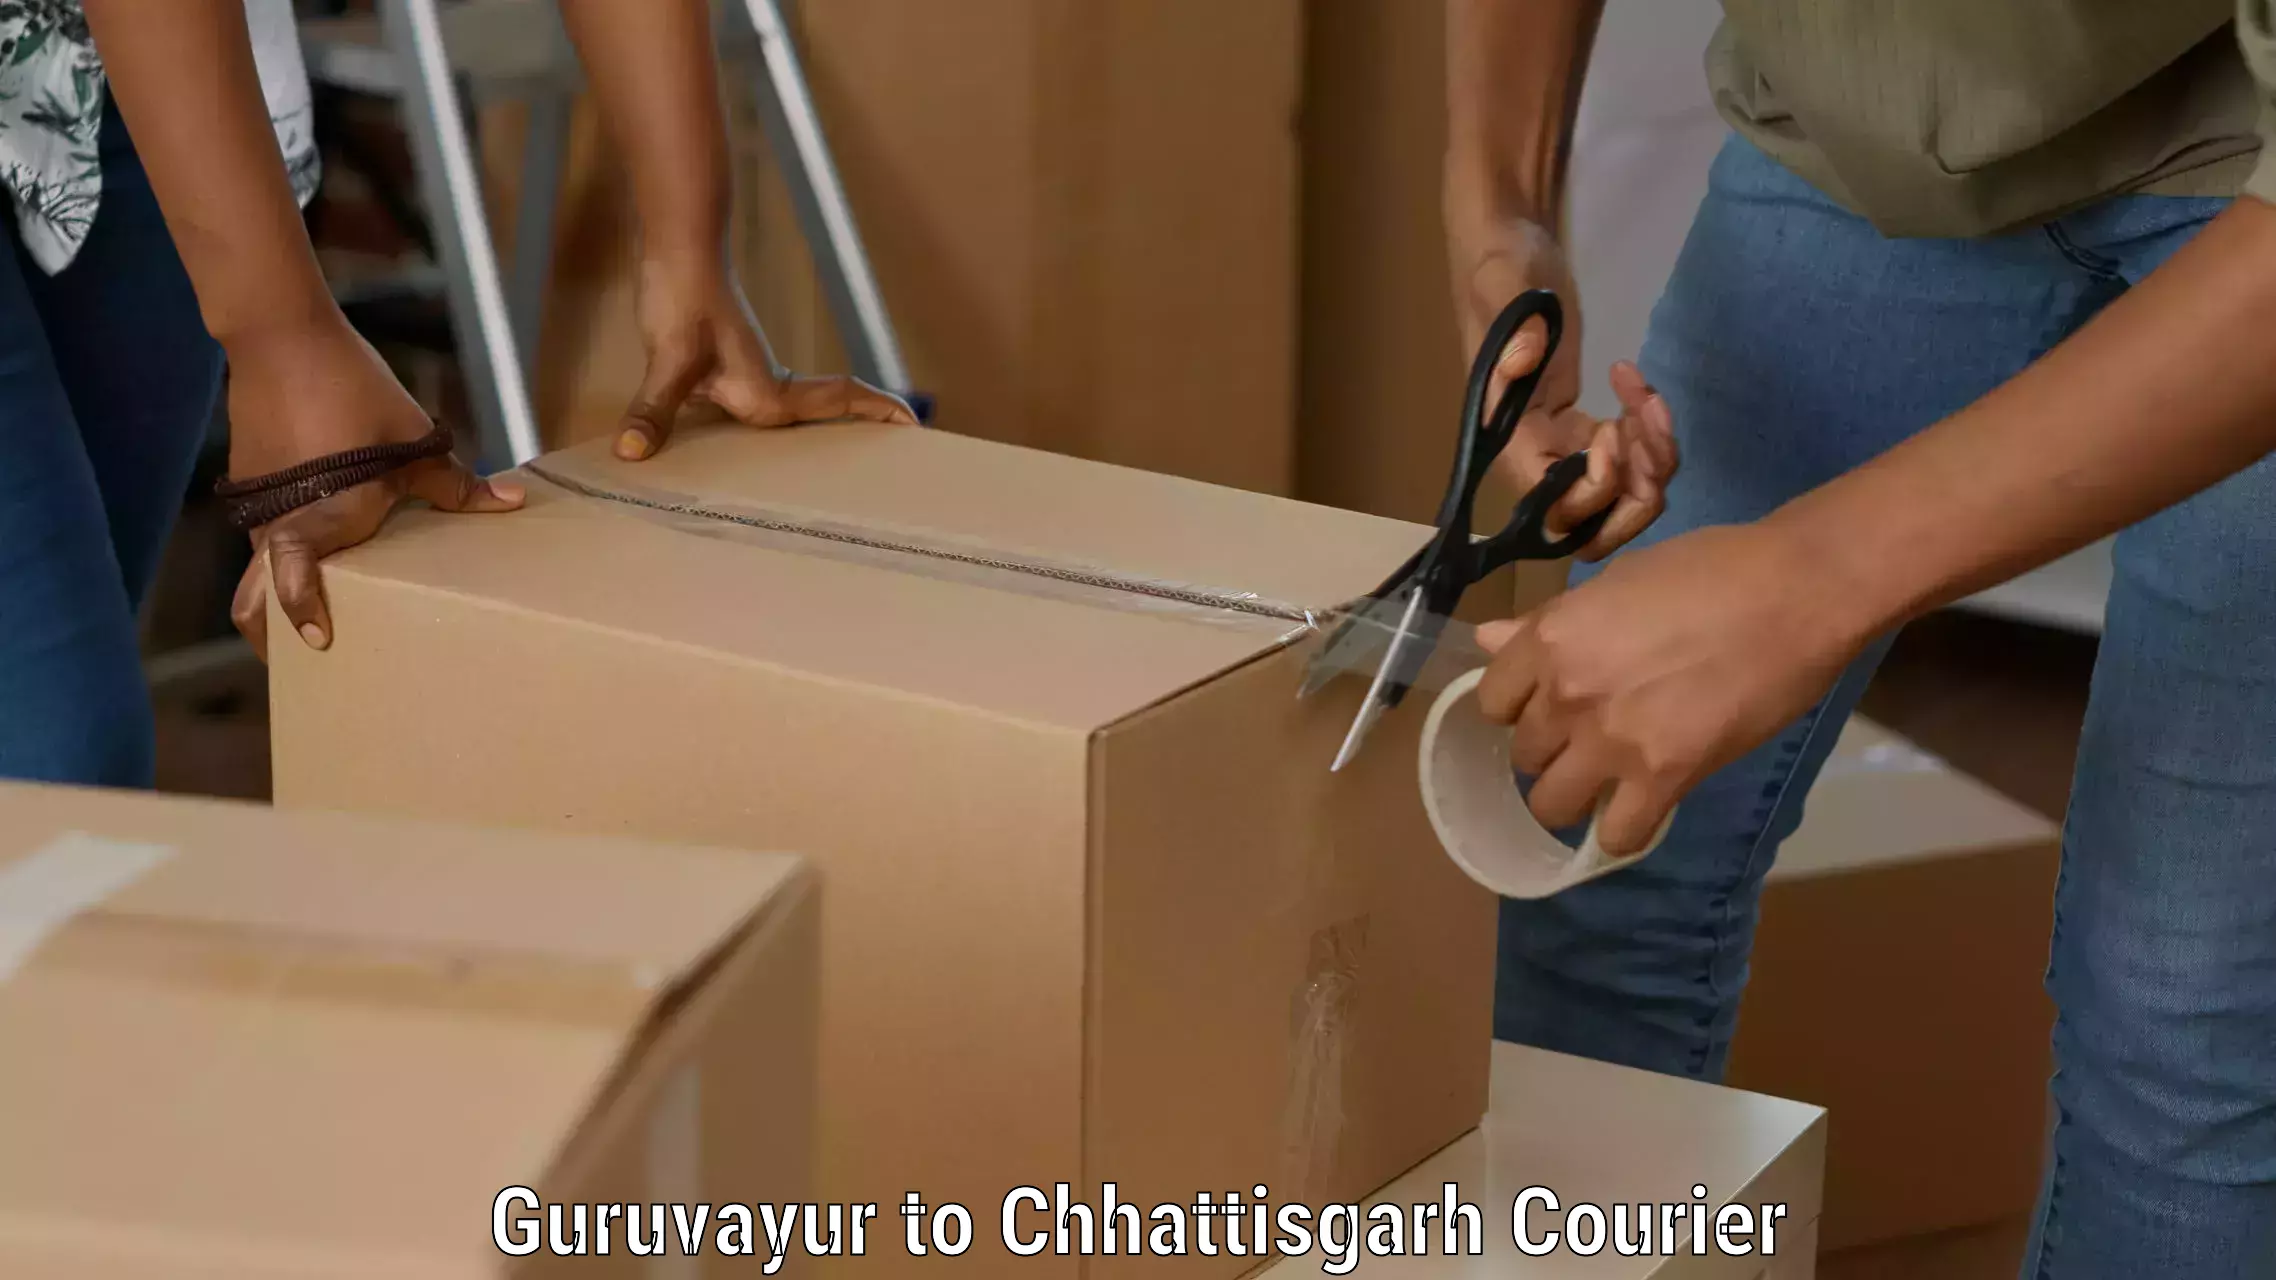 Courier service comparison Guruvayur to Mandhar